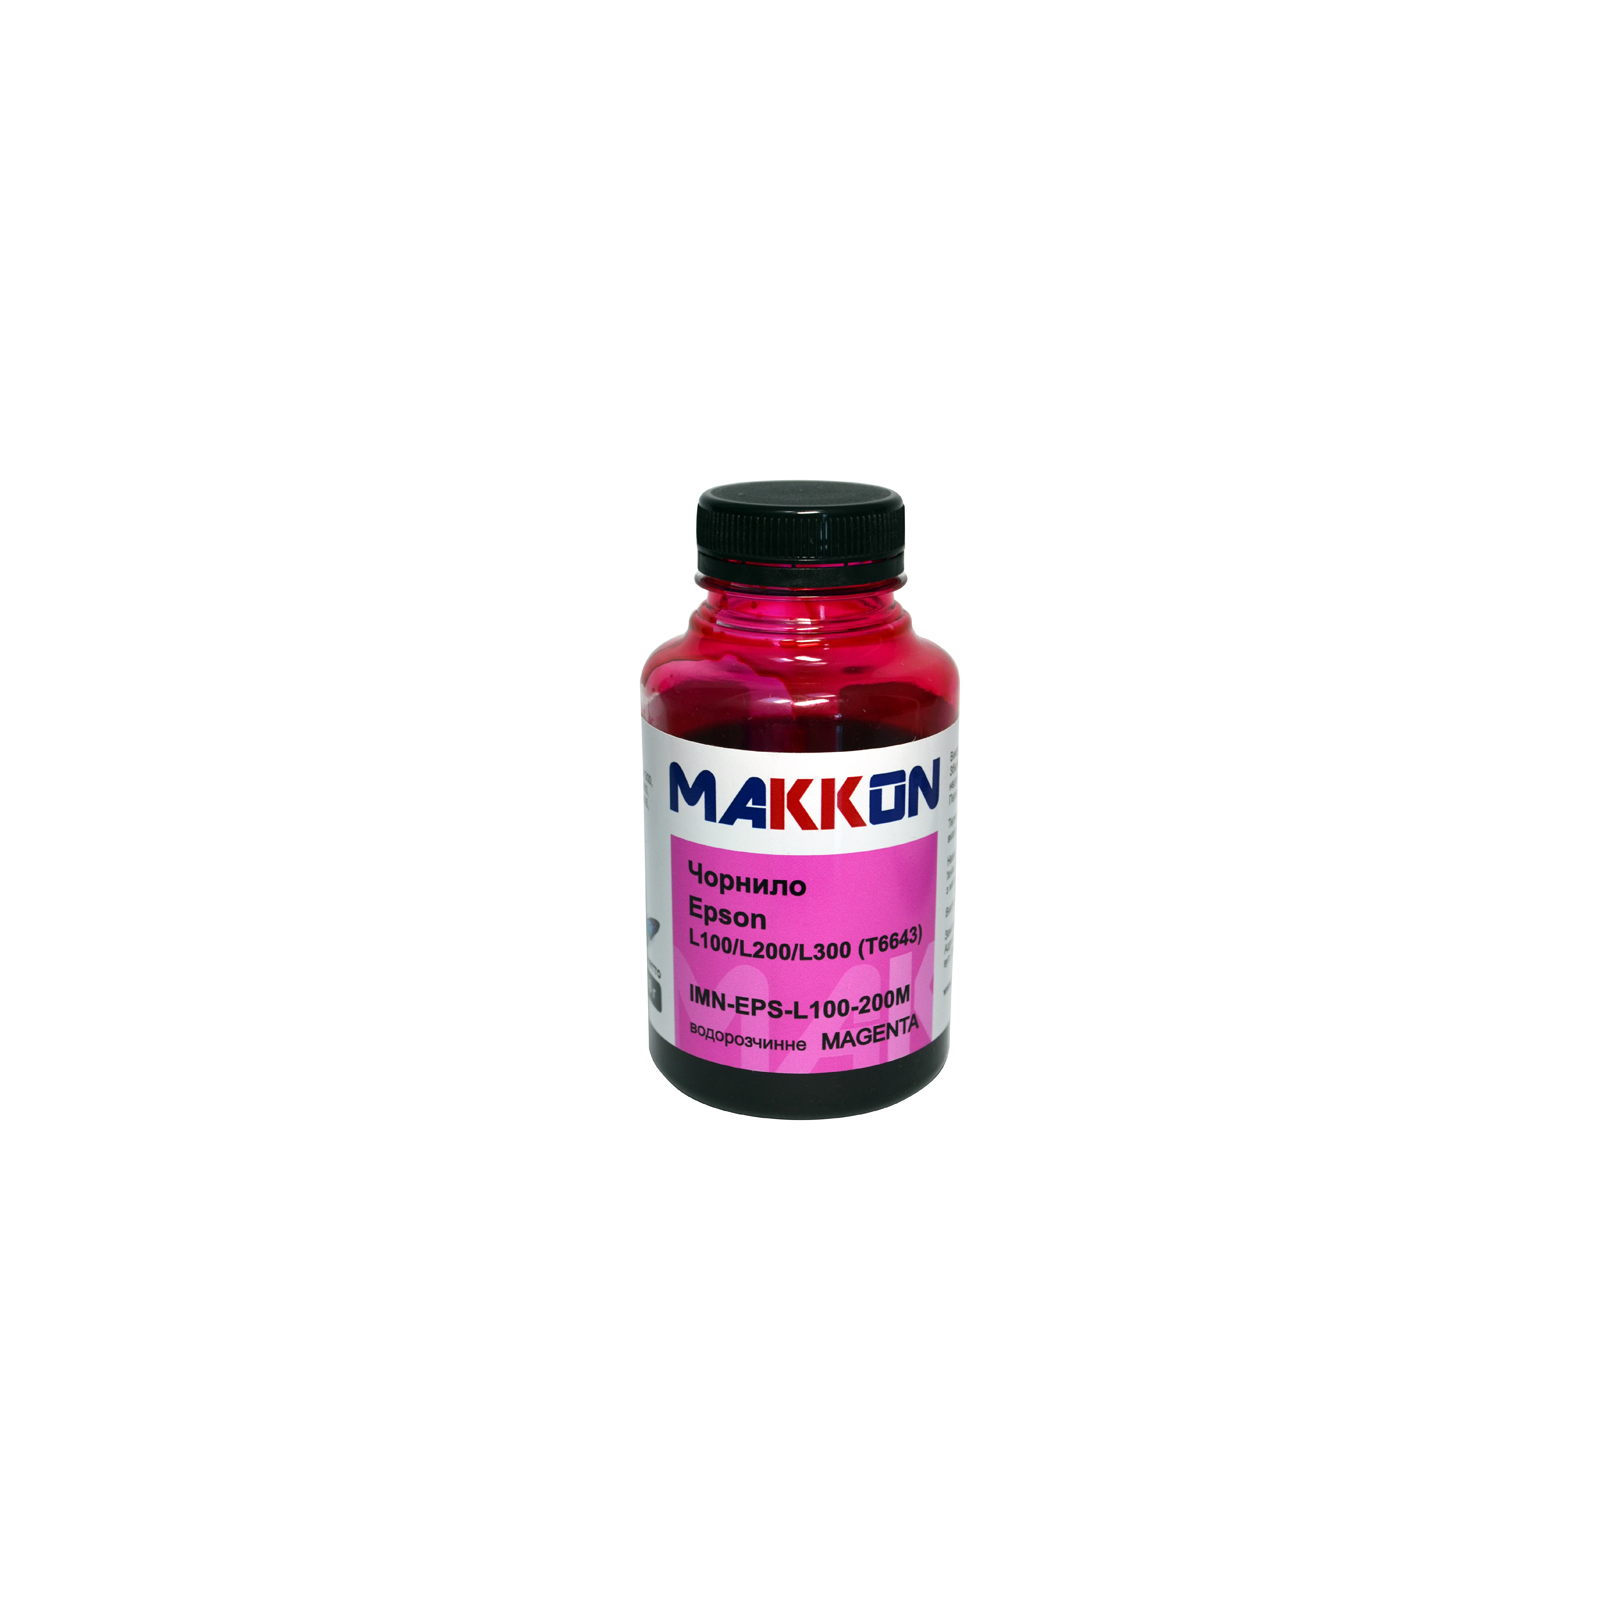 Чернила Makkon Epson L100/L200/L300 (T6643) 200г magenta (IMN-EPS-L100-200M)